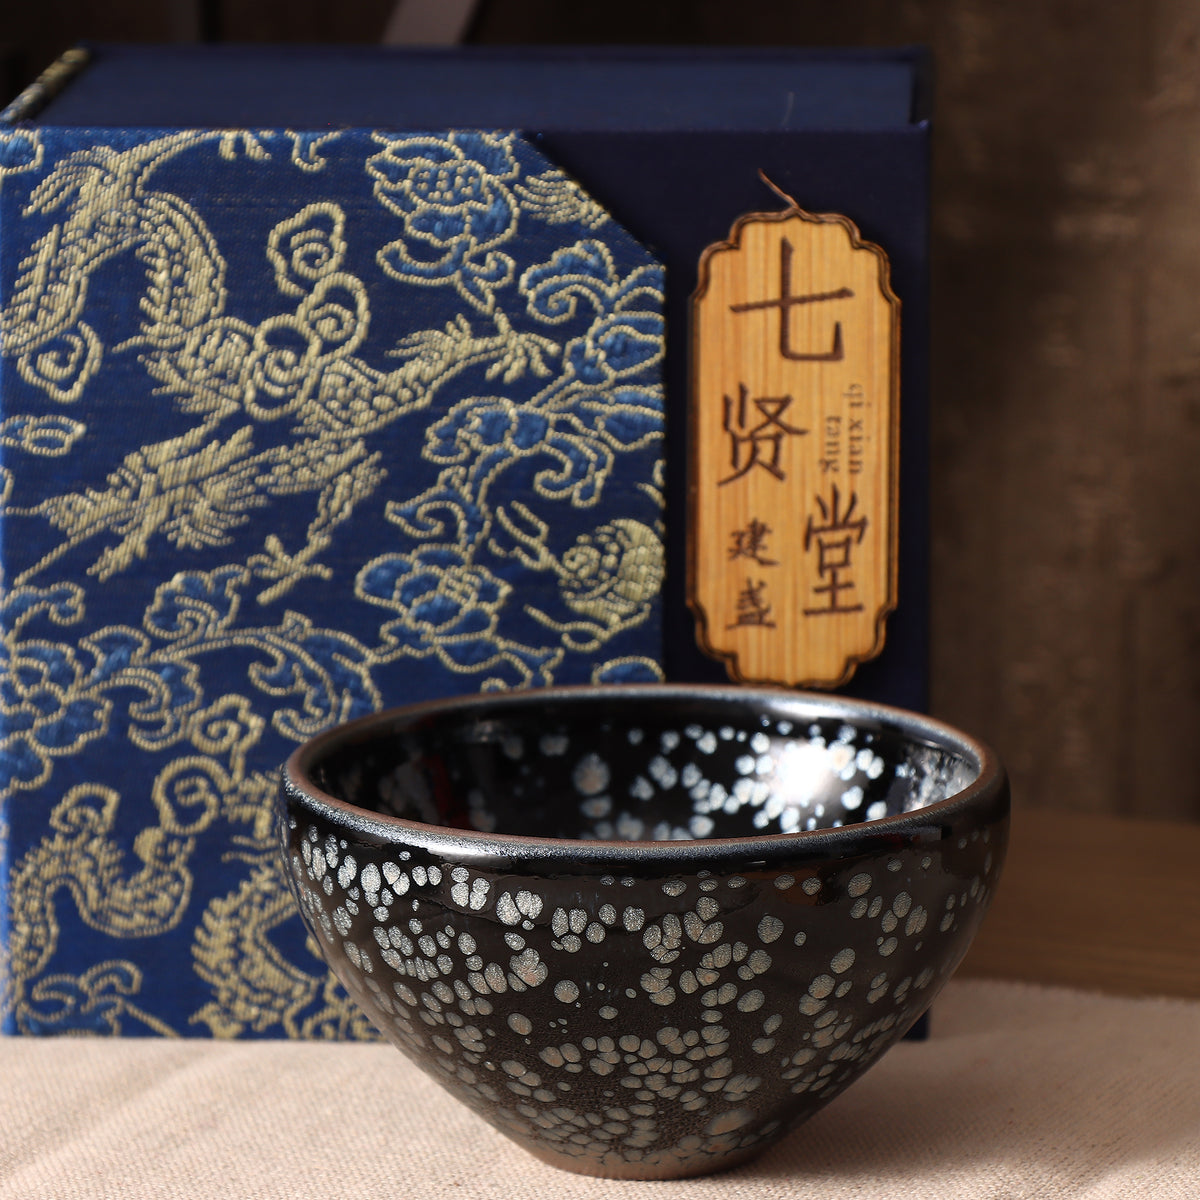 Qixiantang Jianzhan tea cup